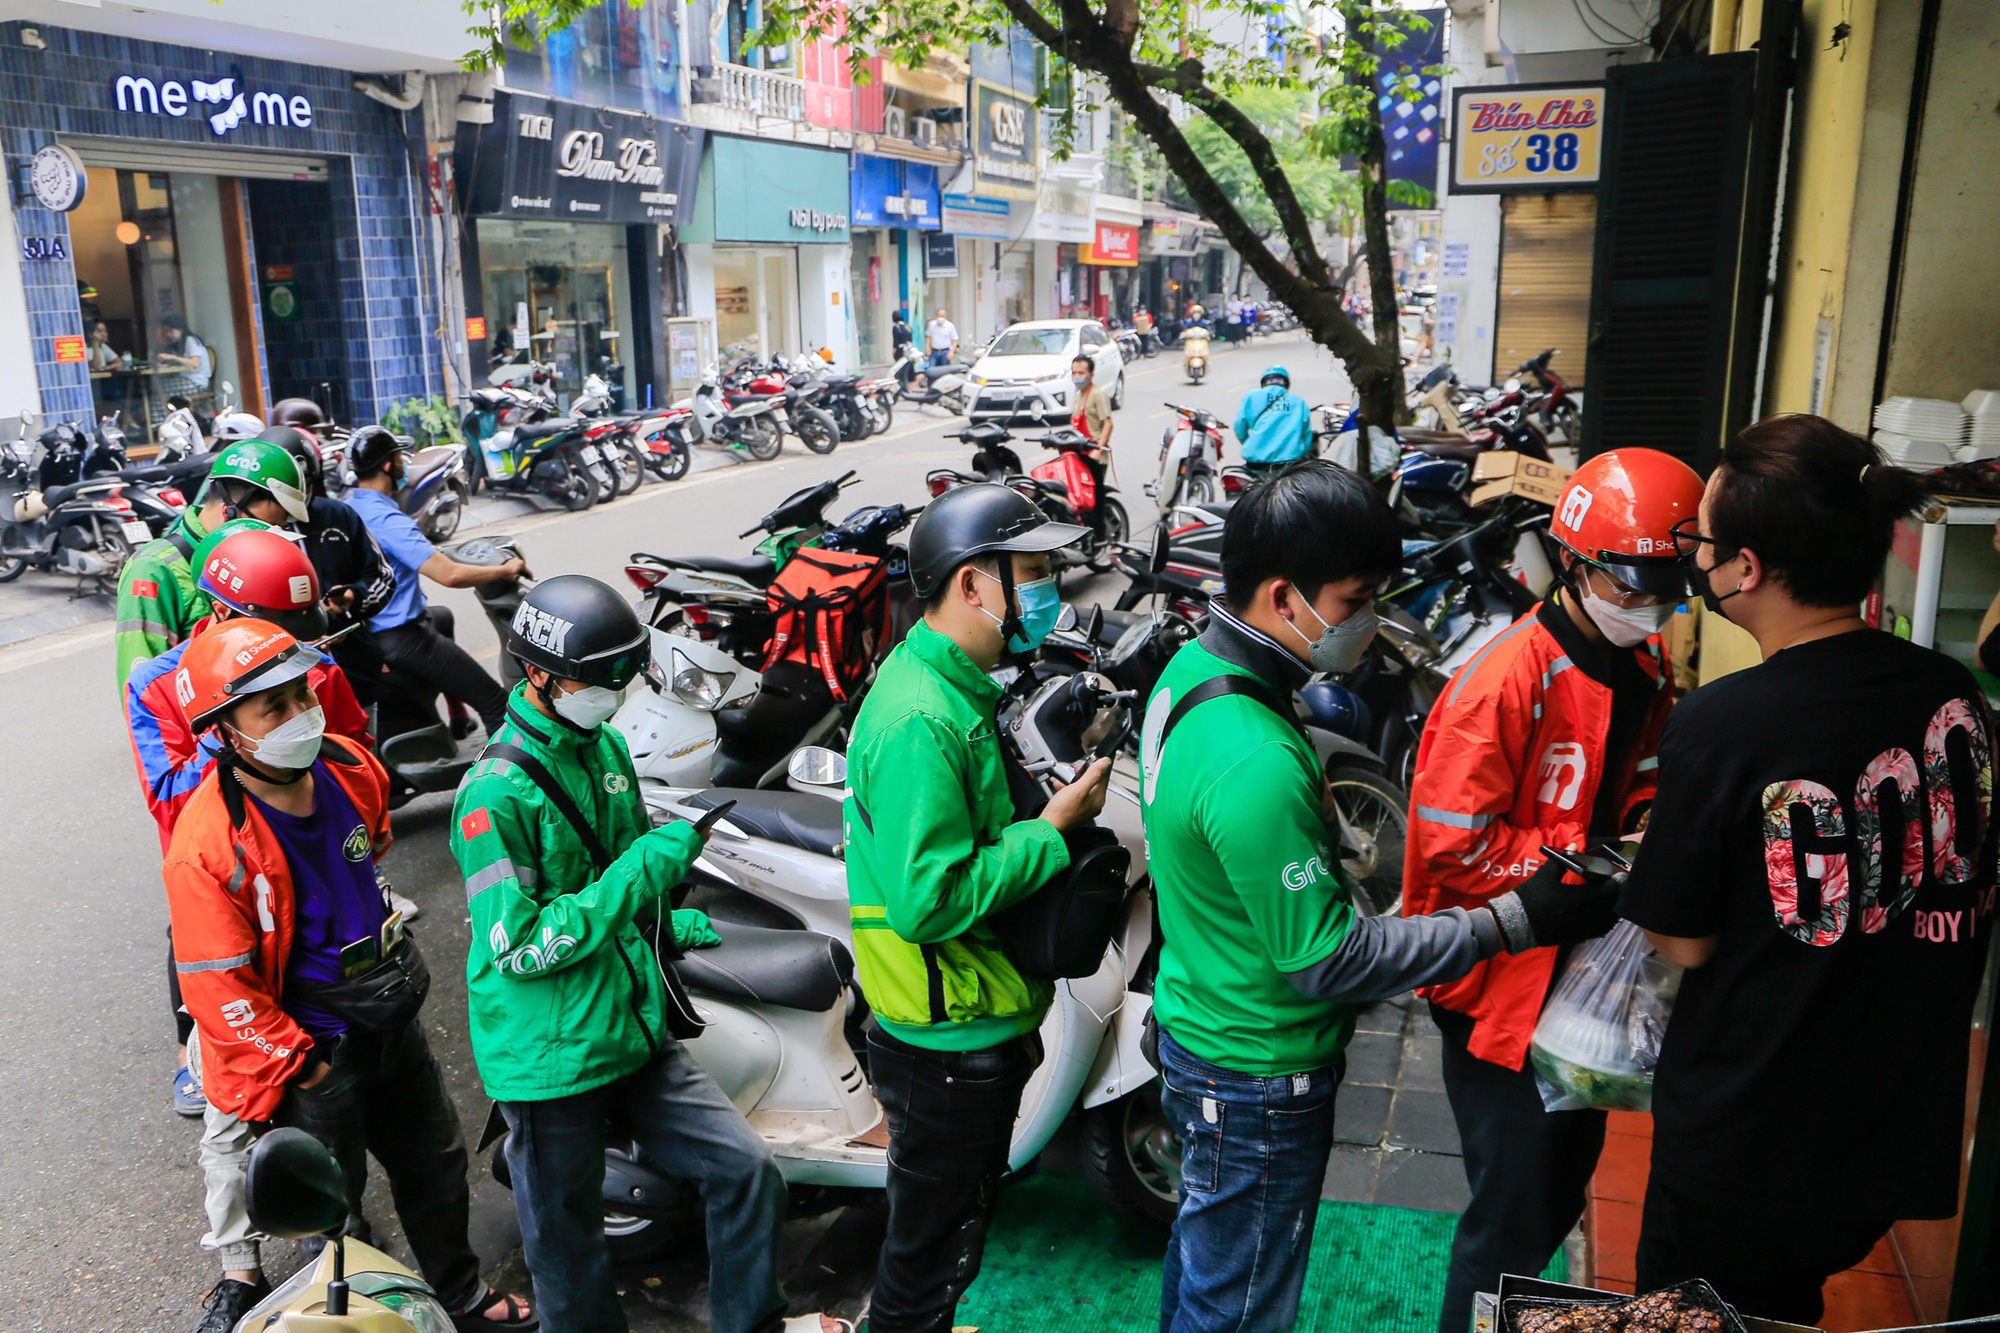 Hàng bún chả ở Hà Nội bán hàng trăm suất vào buổi trưa - Ảnh 1.